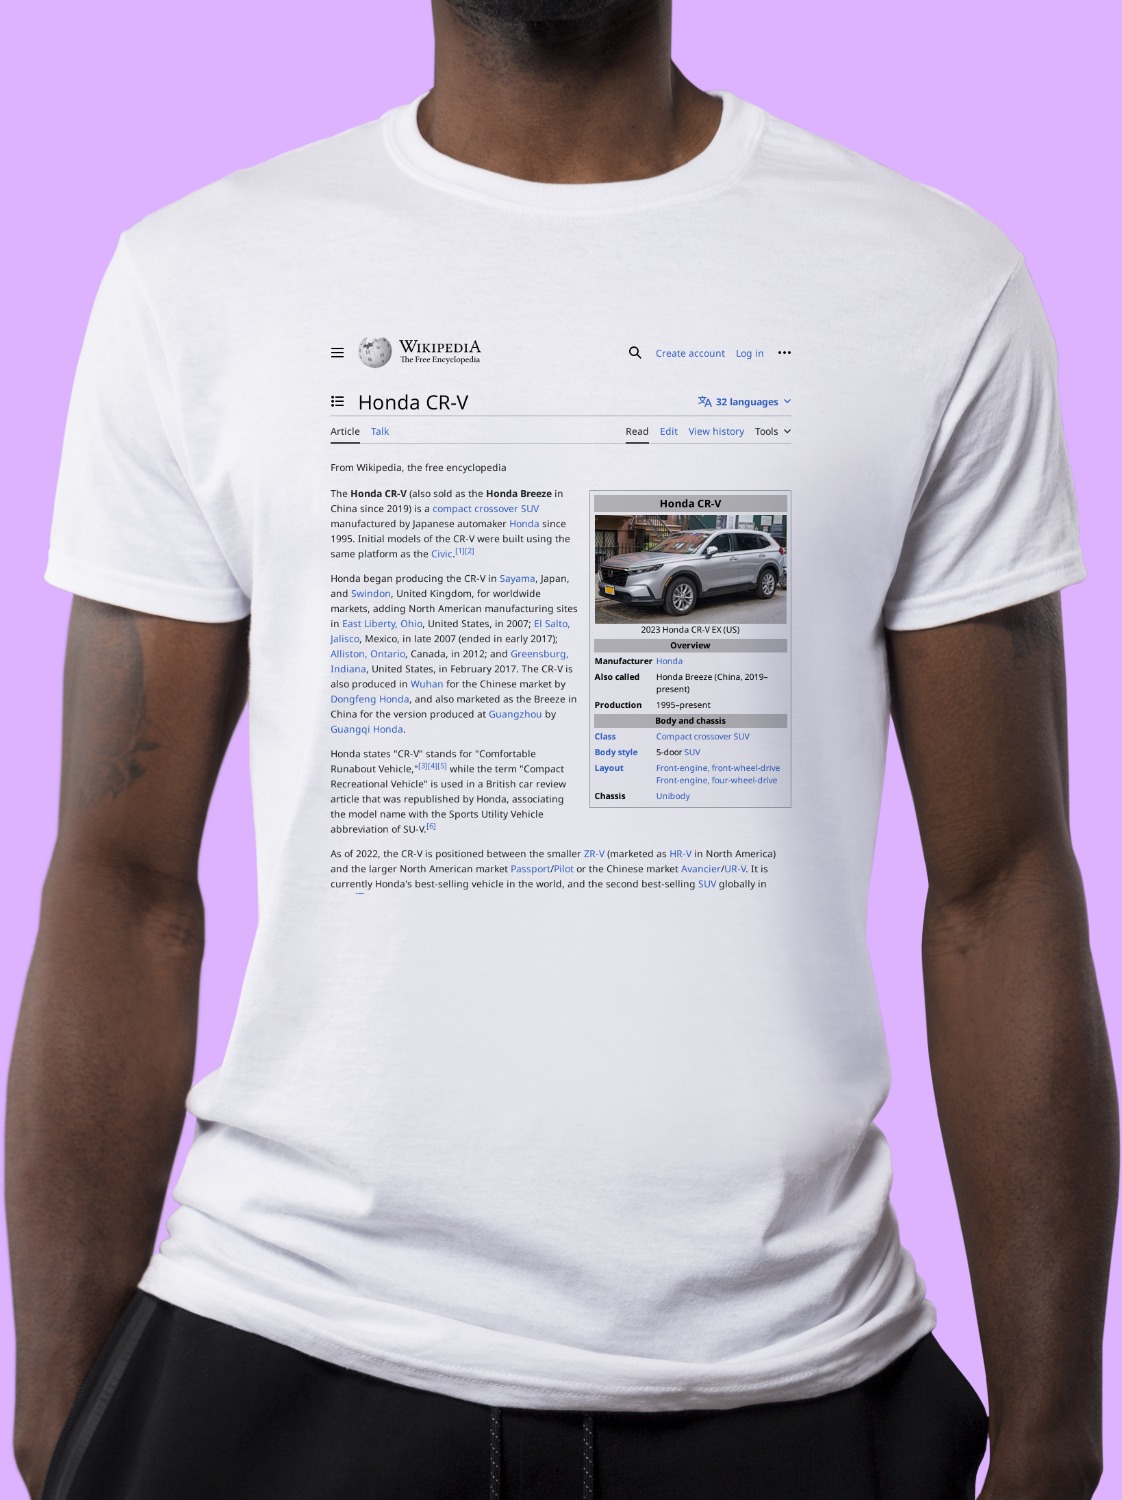 Honda_CR-V Wikipedia Shirt